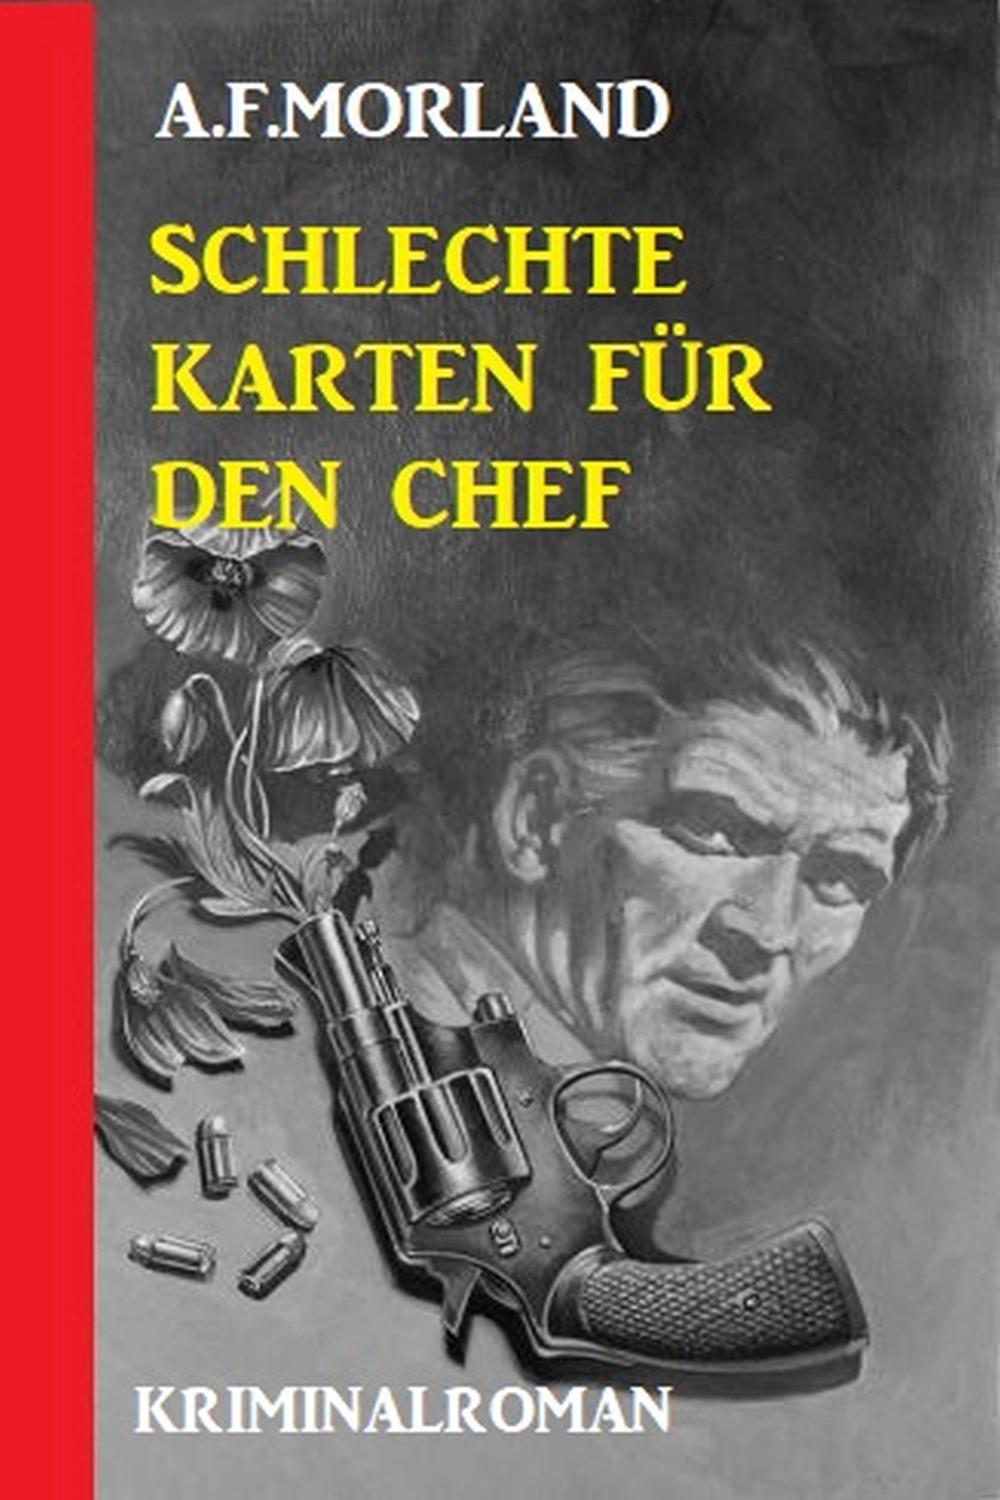 PDF] Schlechte Karten für den Chef: Kriminalroman de A. F. Morland